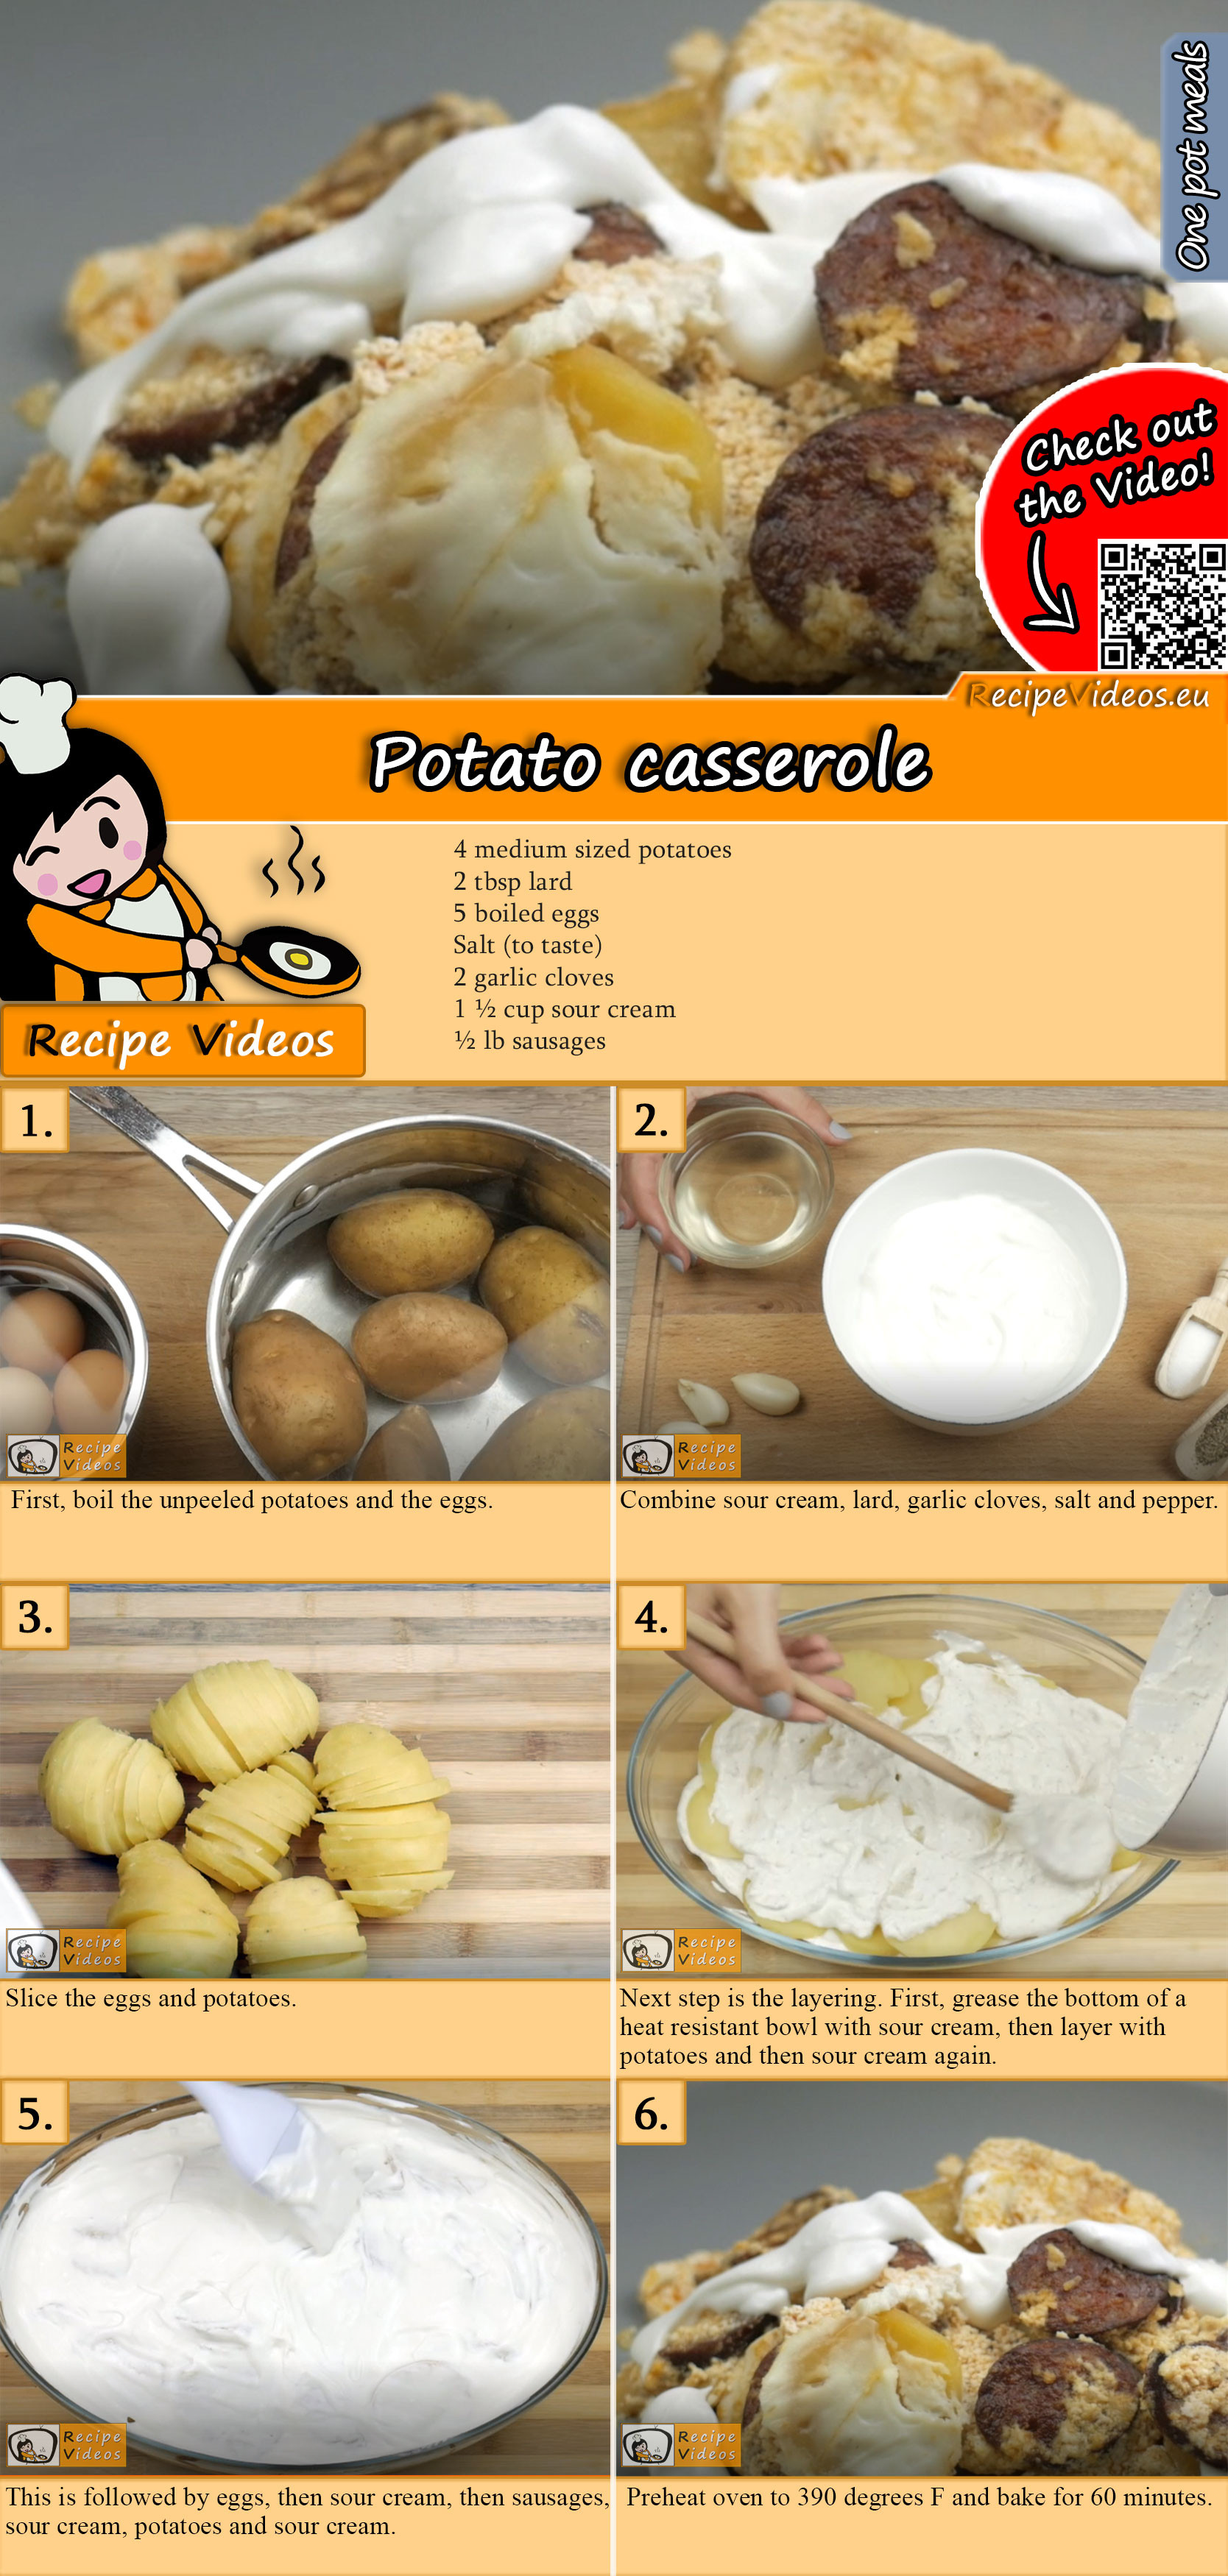 Potato casserole recipe with video